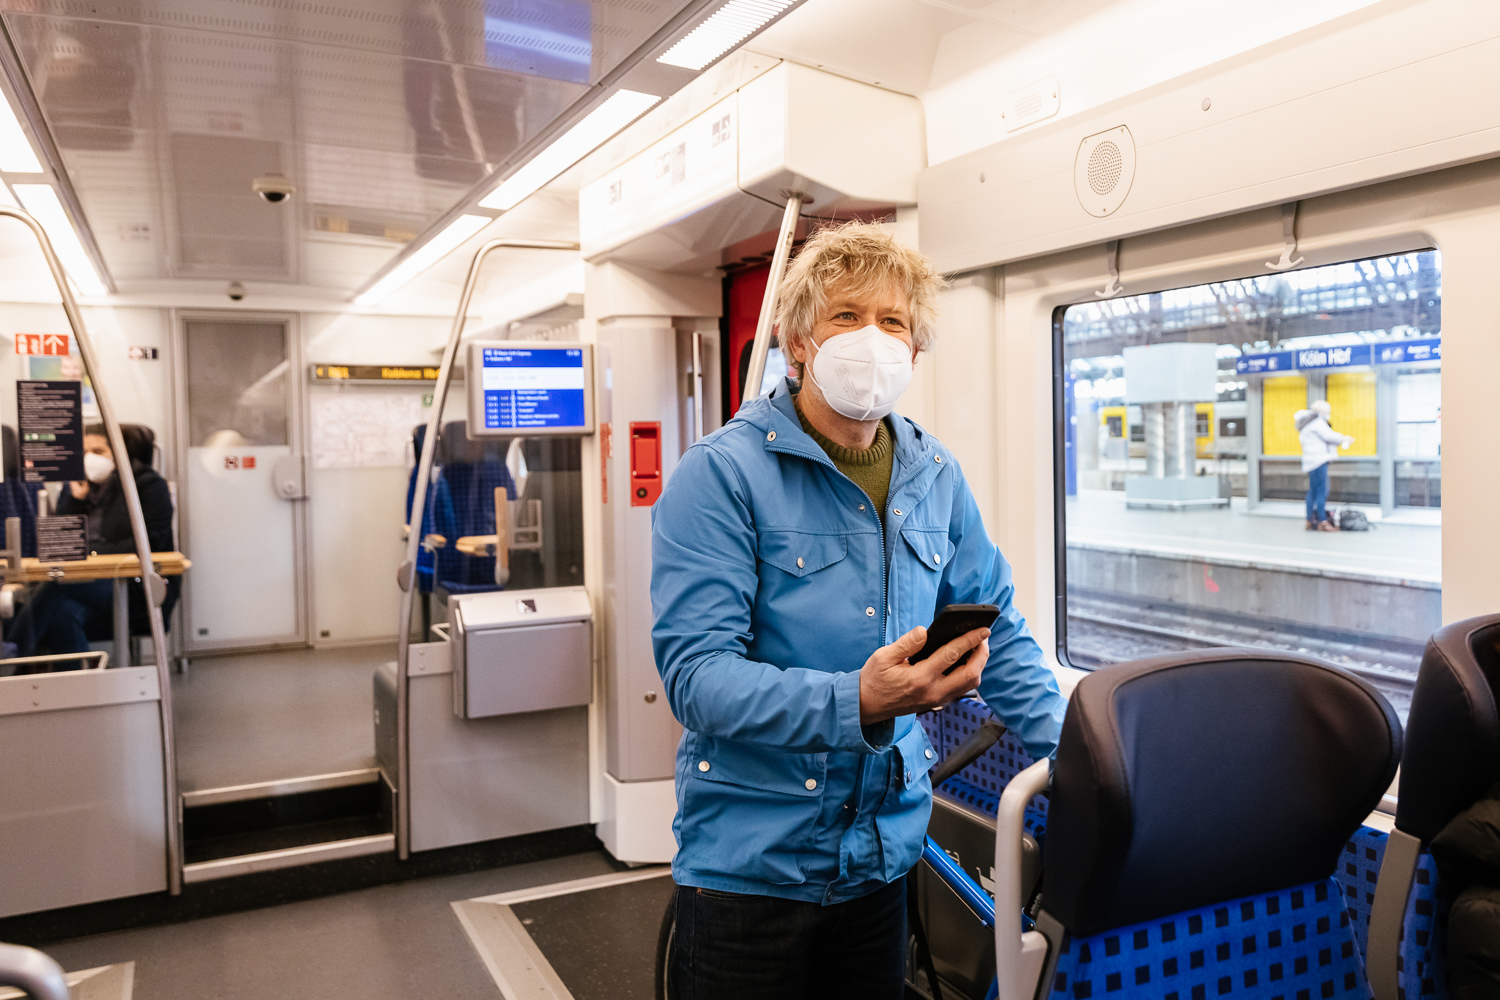 Ein Kunde mit Handy in der S-Bahn. Trotz Maske ist seinem Gesichtsausdruck klar zu entnehmen, dass er sich über das WLAN an Board freut.